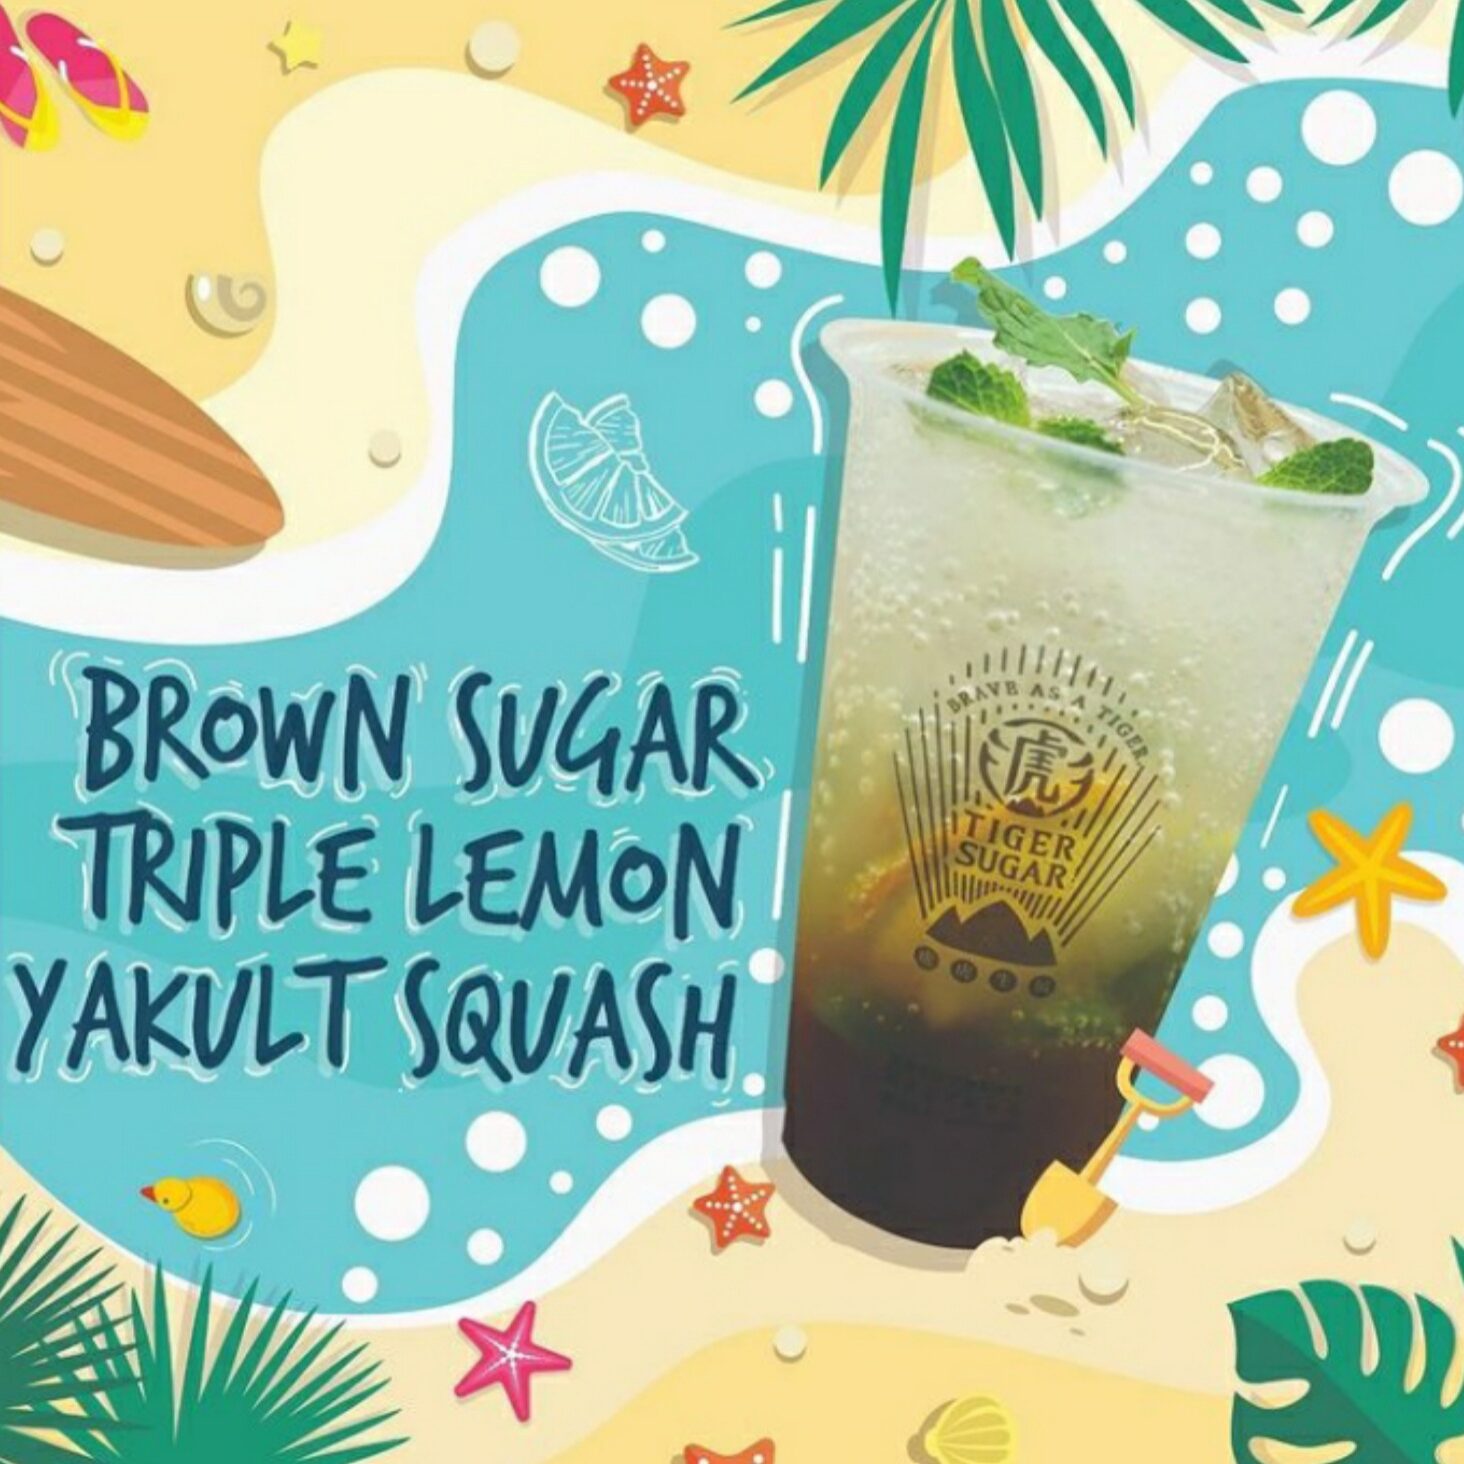 Brown Sugar Yakult Triple Lemon 